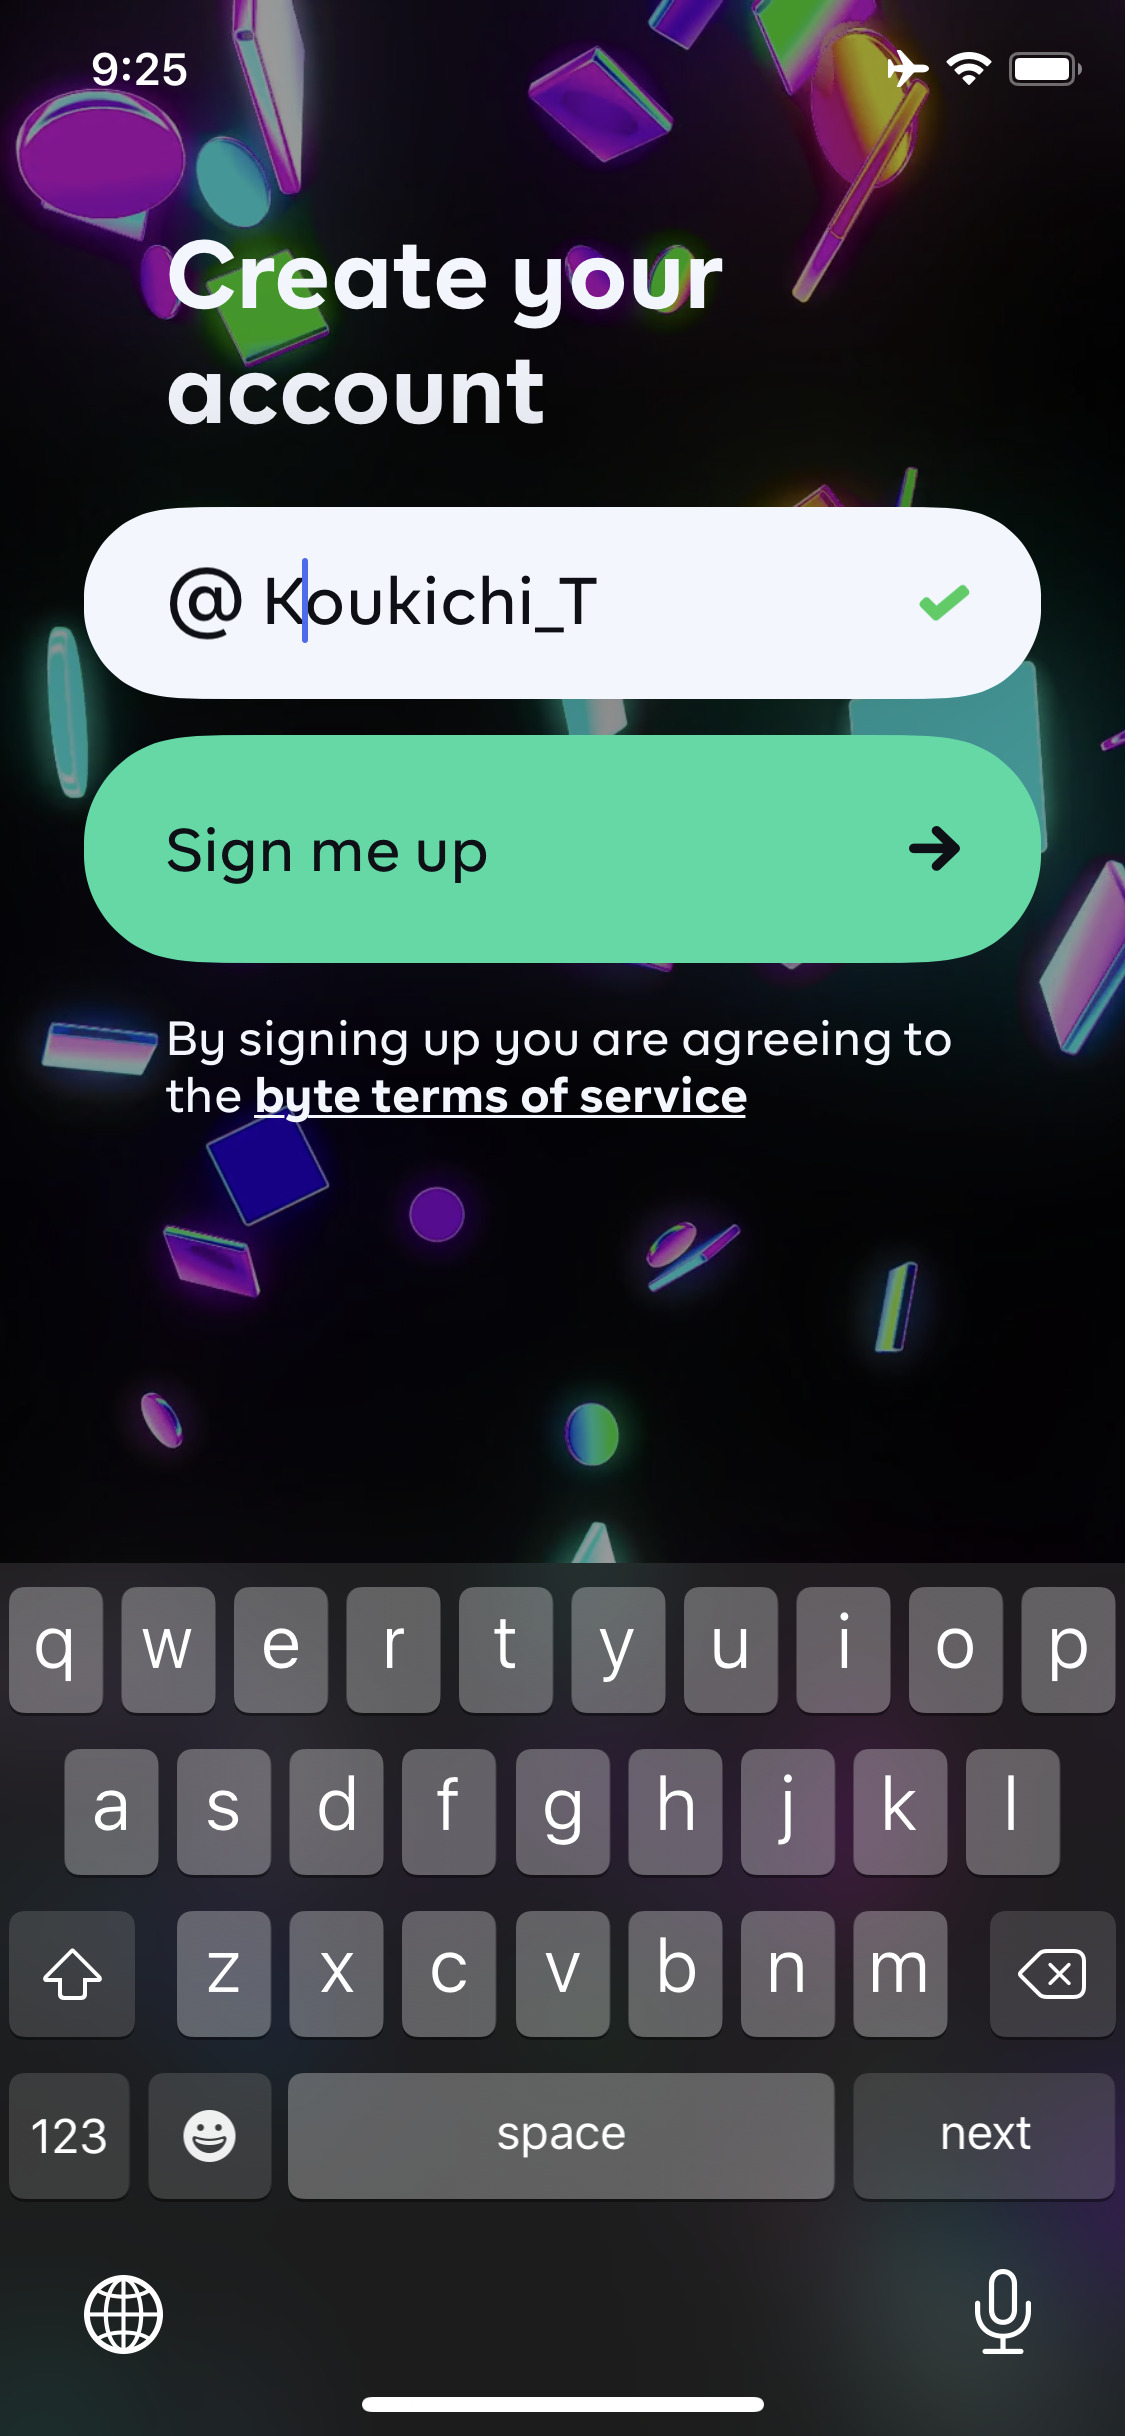 6秒動画Vine後継「byte」iOS/Androidアプリ配信開始！使い方や画面解説。byte/対TikTokライバル ショートムービーアプリ最新ニュース 2020年1月25日